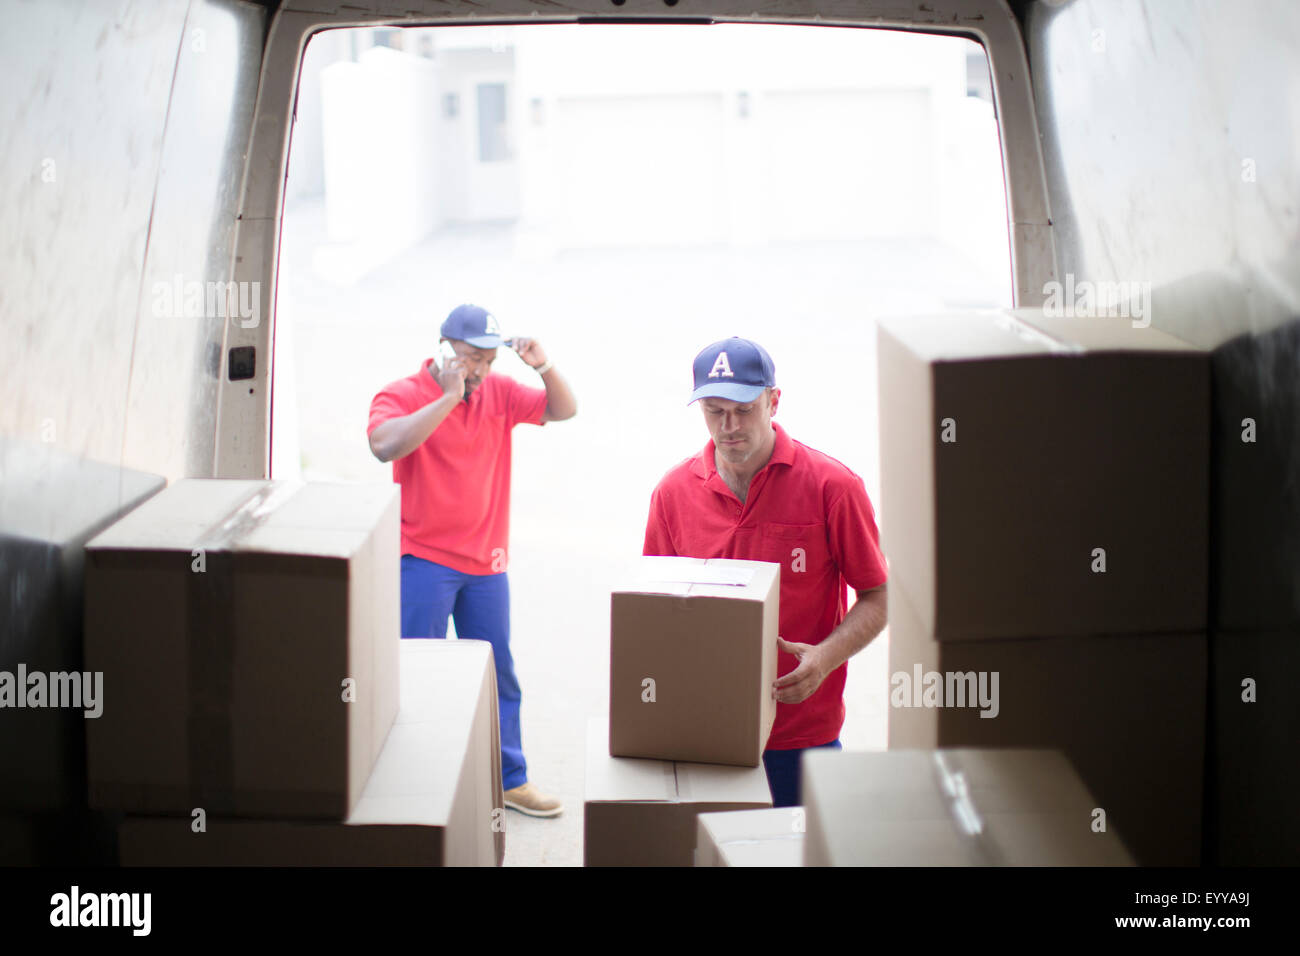 Delivery men unloading packages in van Stock Photo